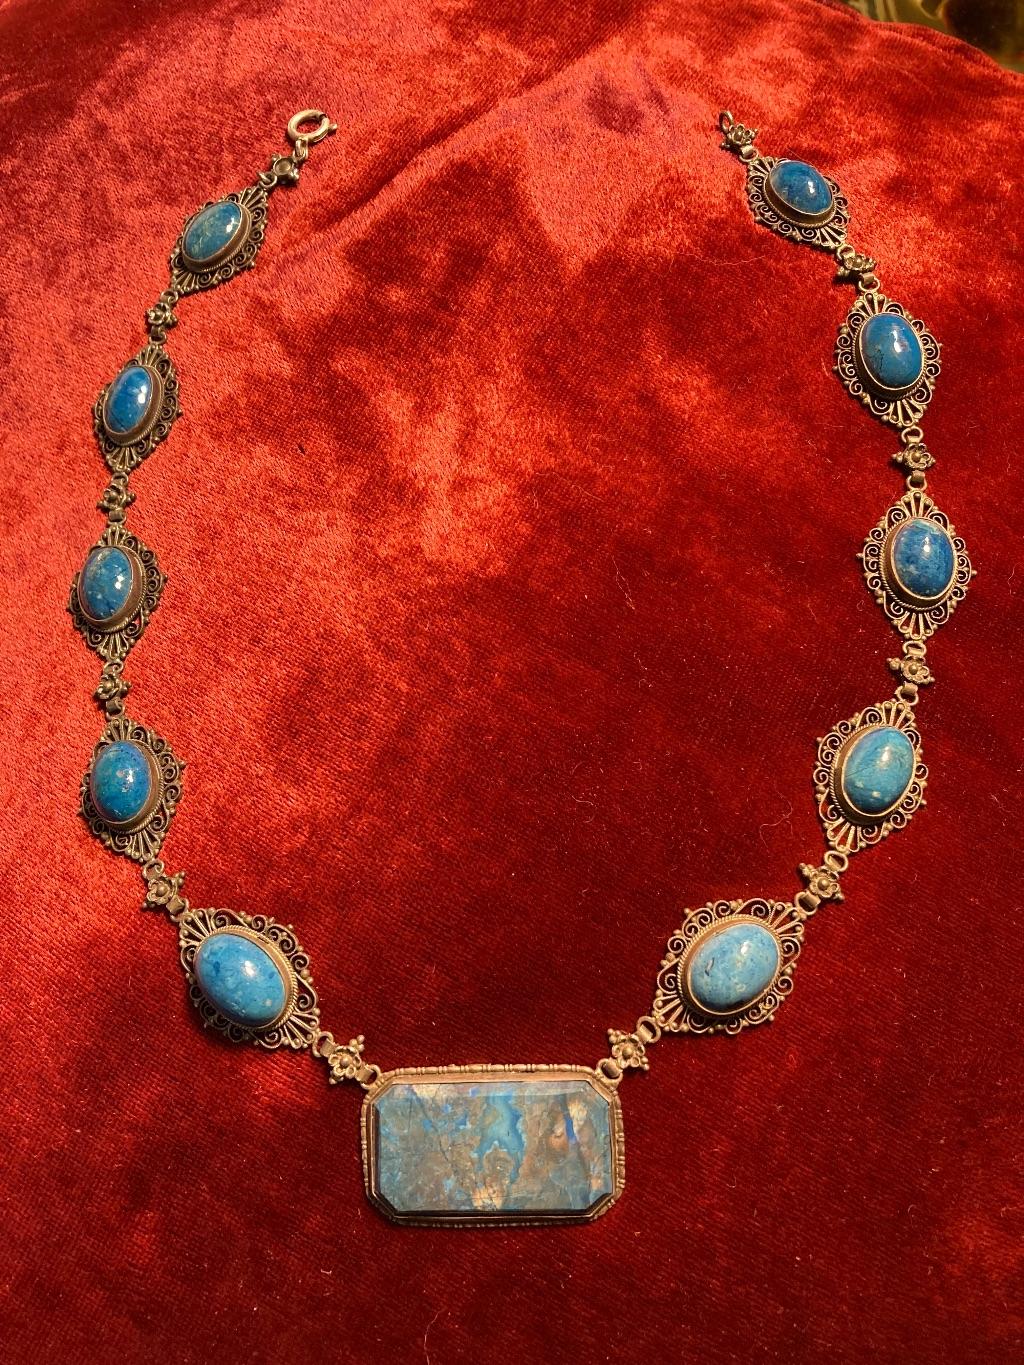 Antique blue stone necklace